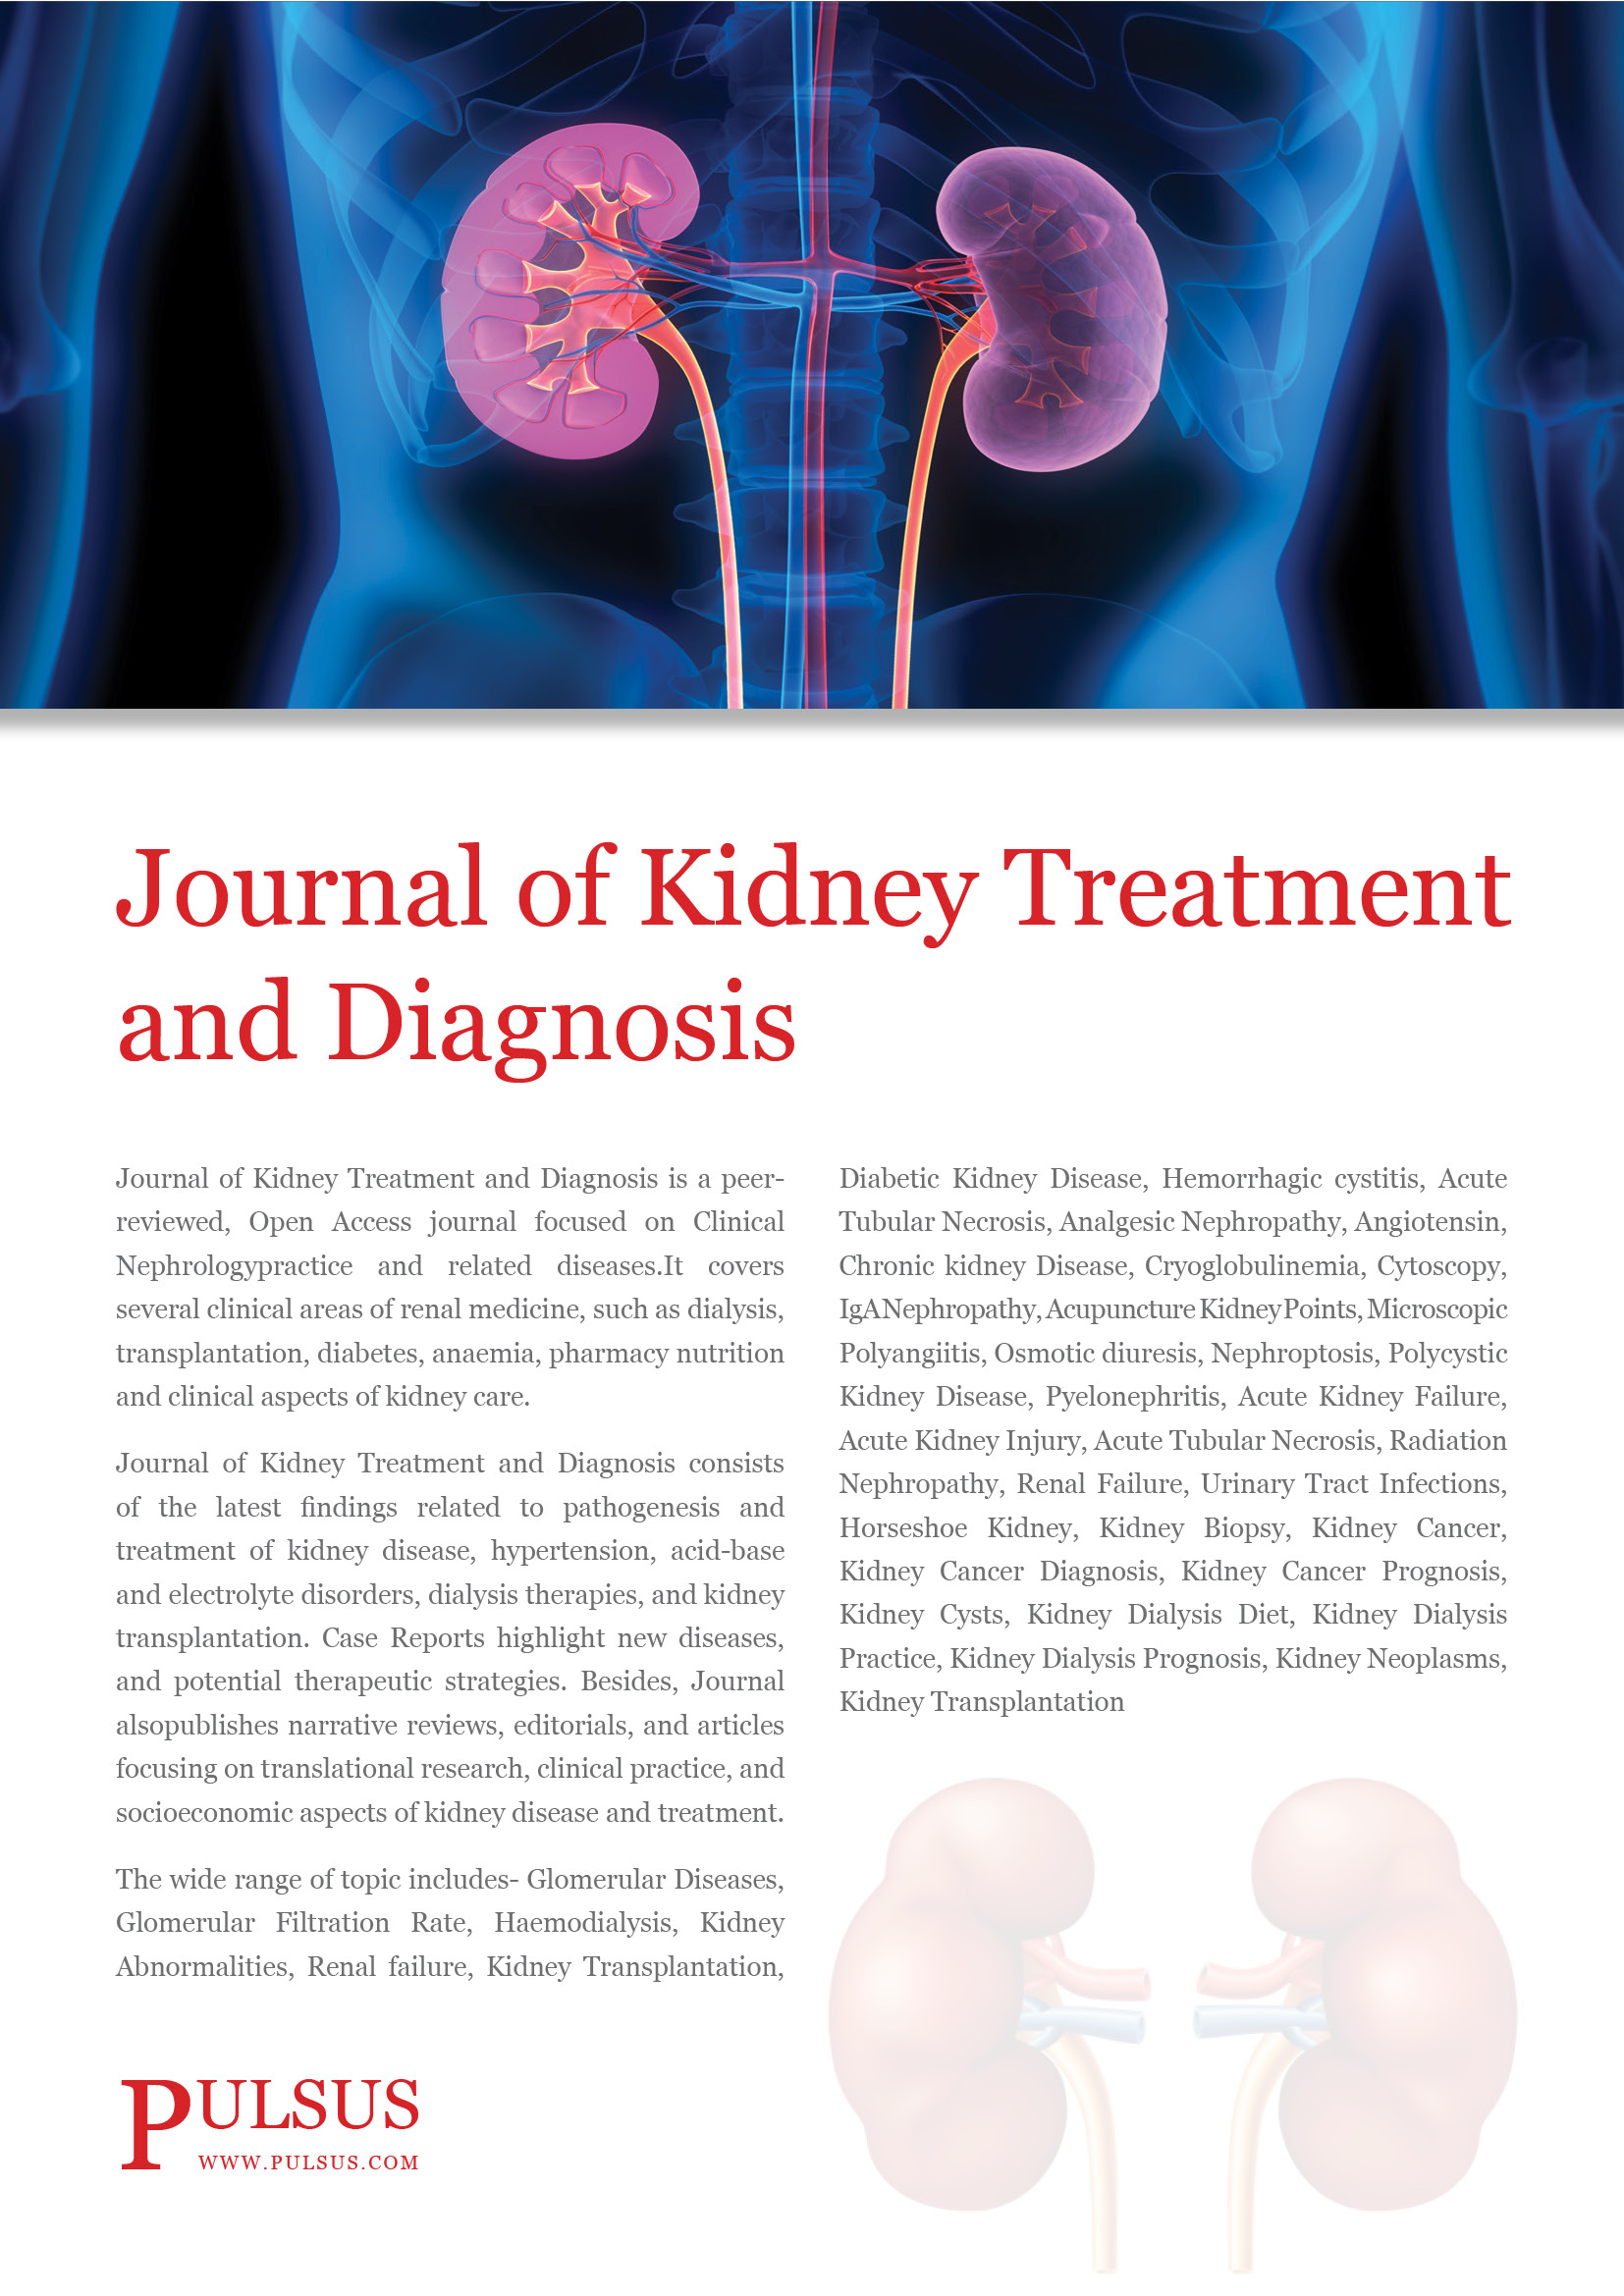 Revista de tratamiento y diagnóstico renal